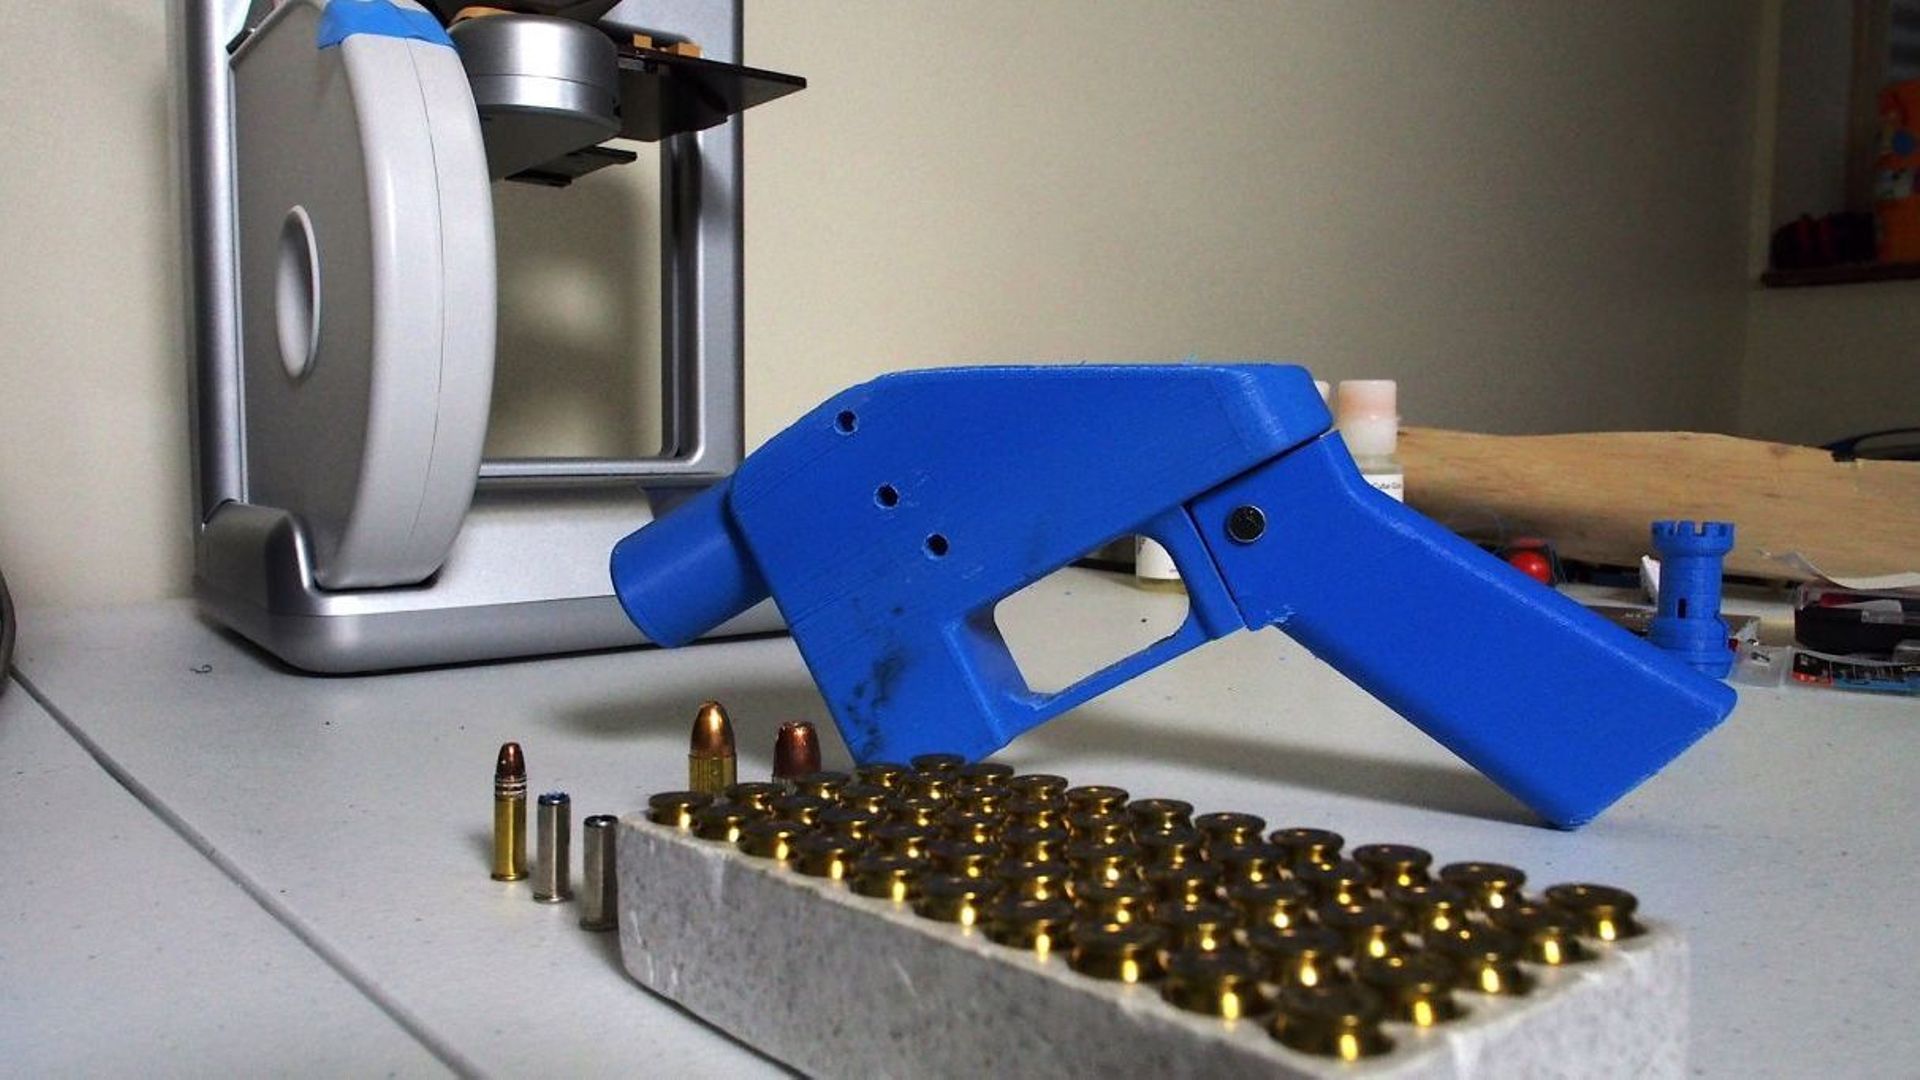 Illustration: un revolver peut être fabriqué avec une imprimante 3D